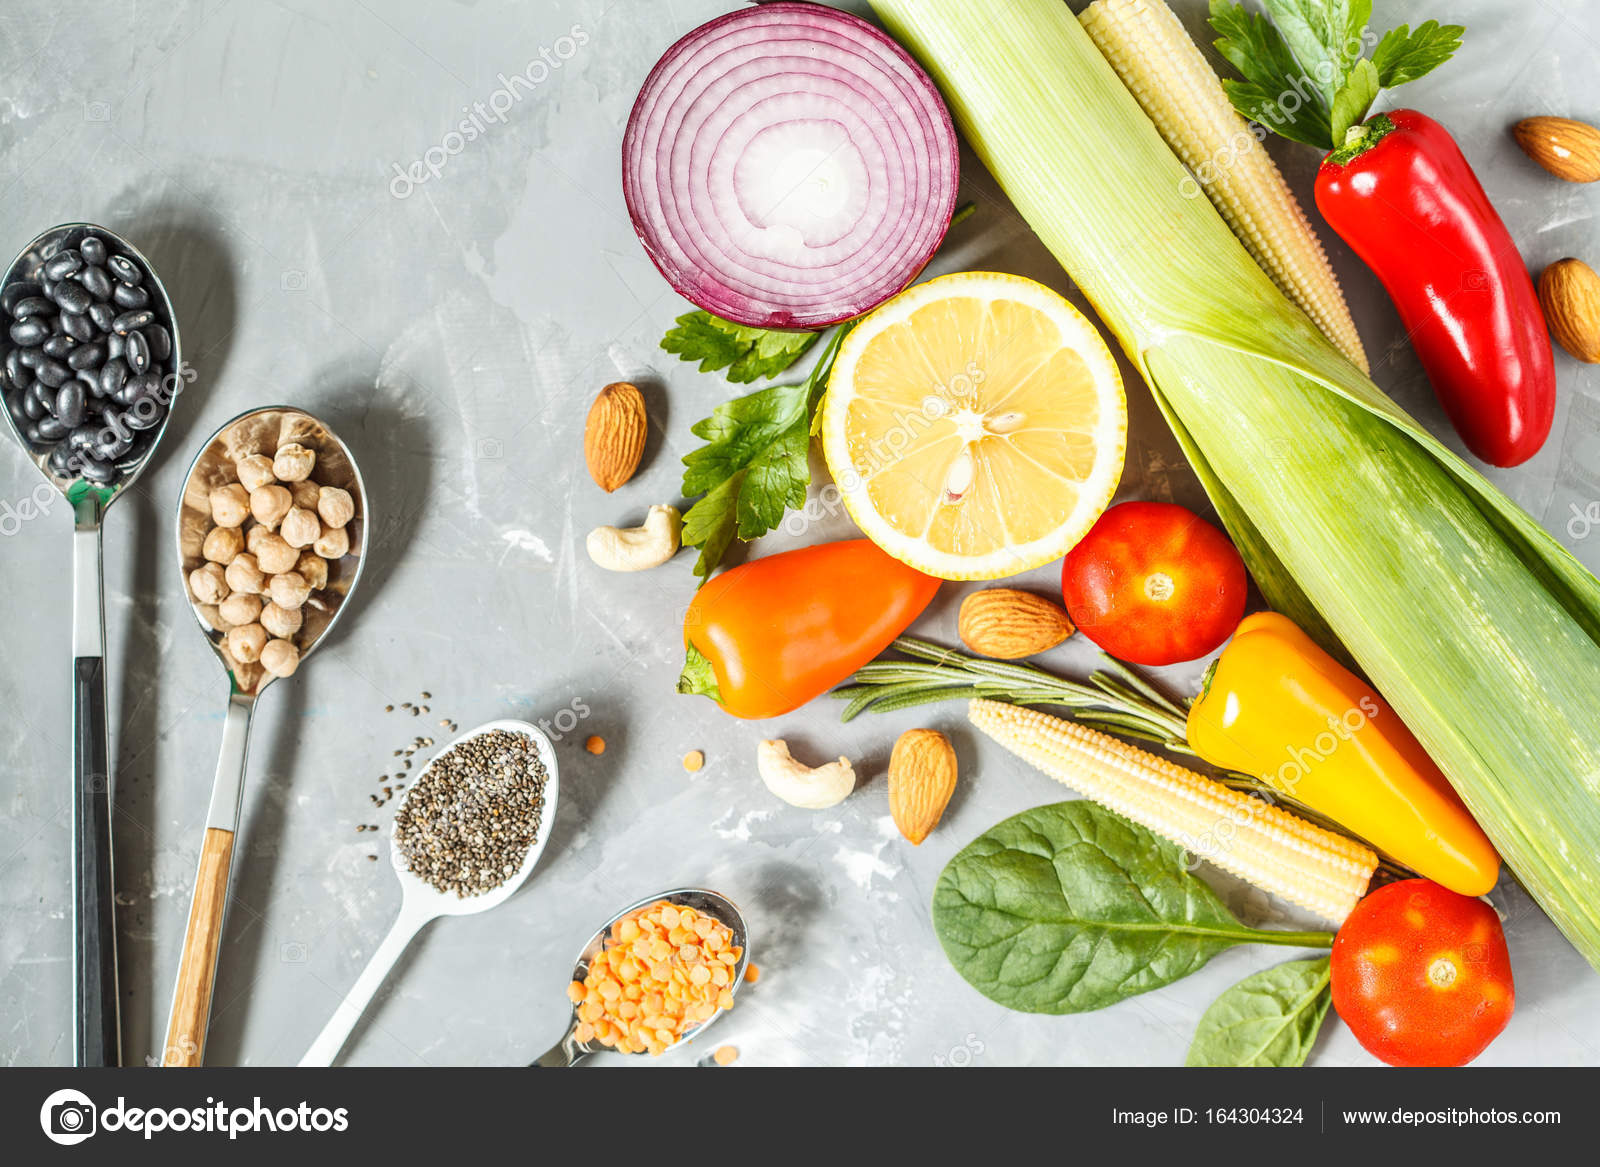 Dieta Vegetariana Melhora HbA1c , Reduz Risco CV em Diabetes